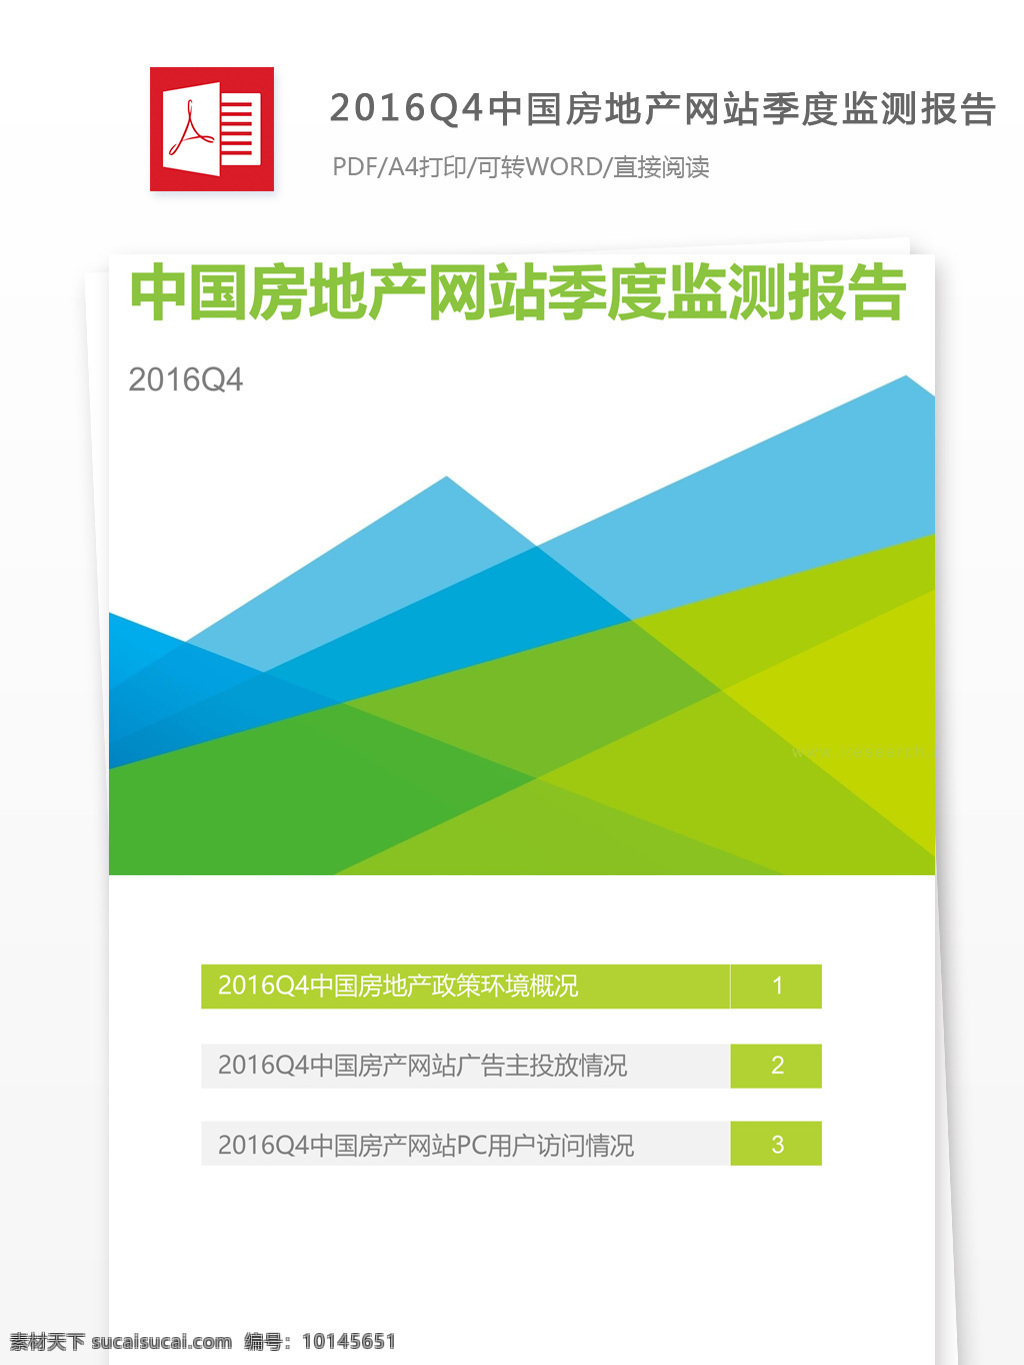 中国 房地产 网站 季度 监测 报告 中国房地产 行业分析报告 数据报告 商业报告模板 研究报告